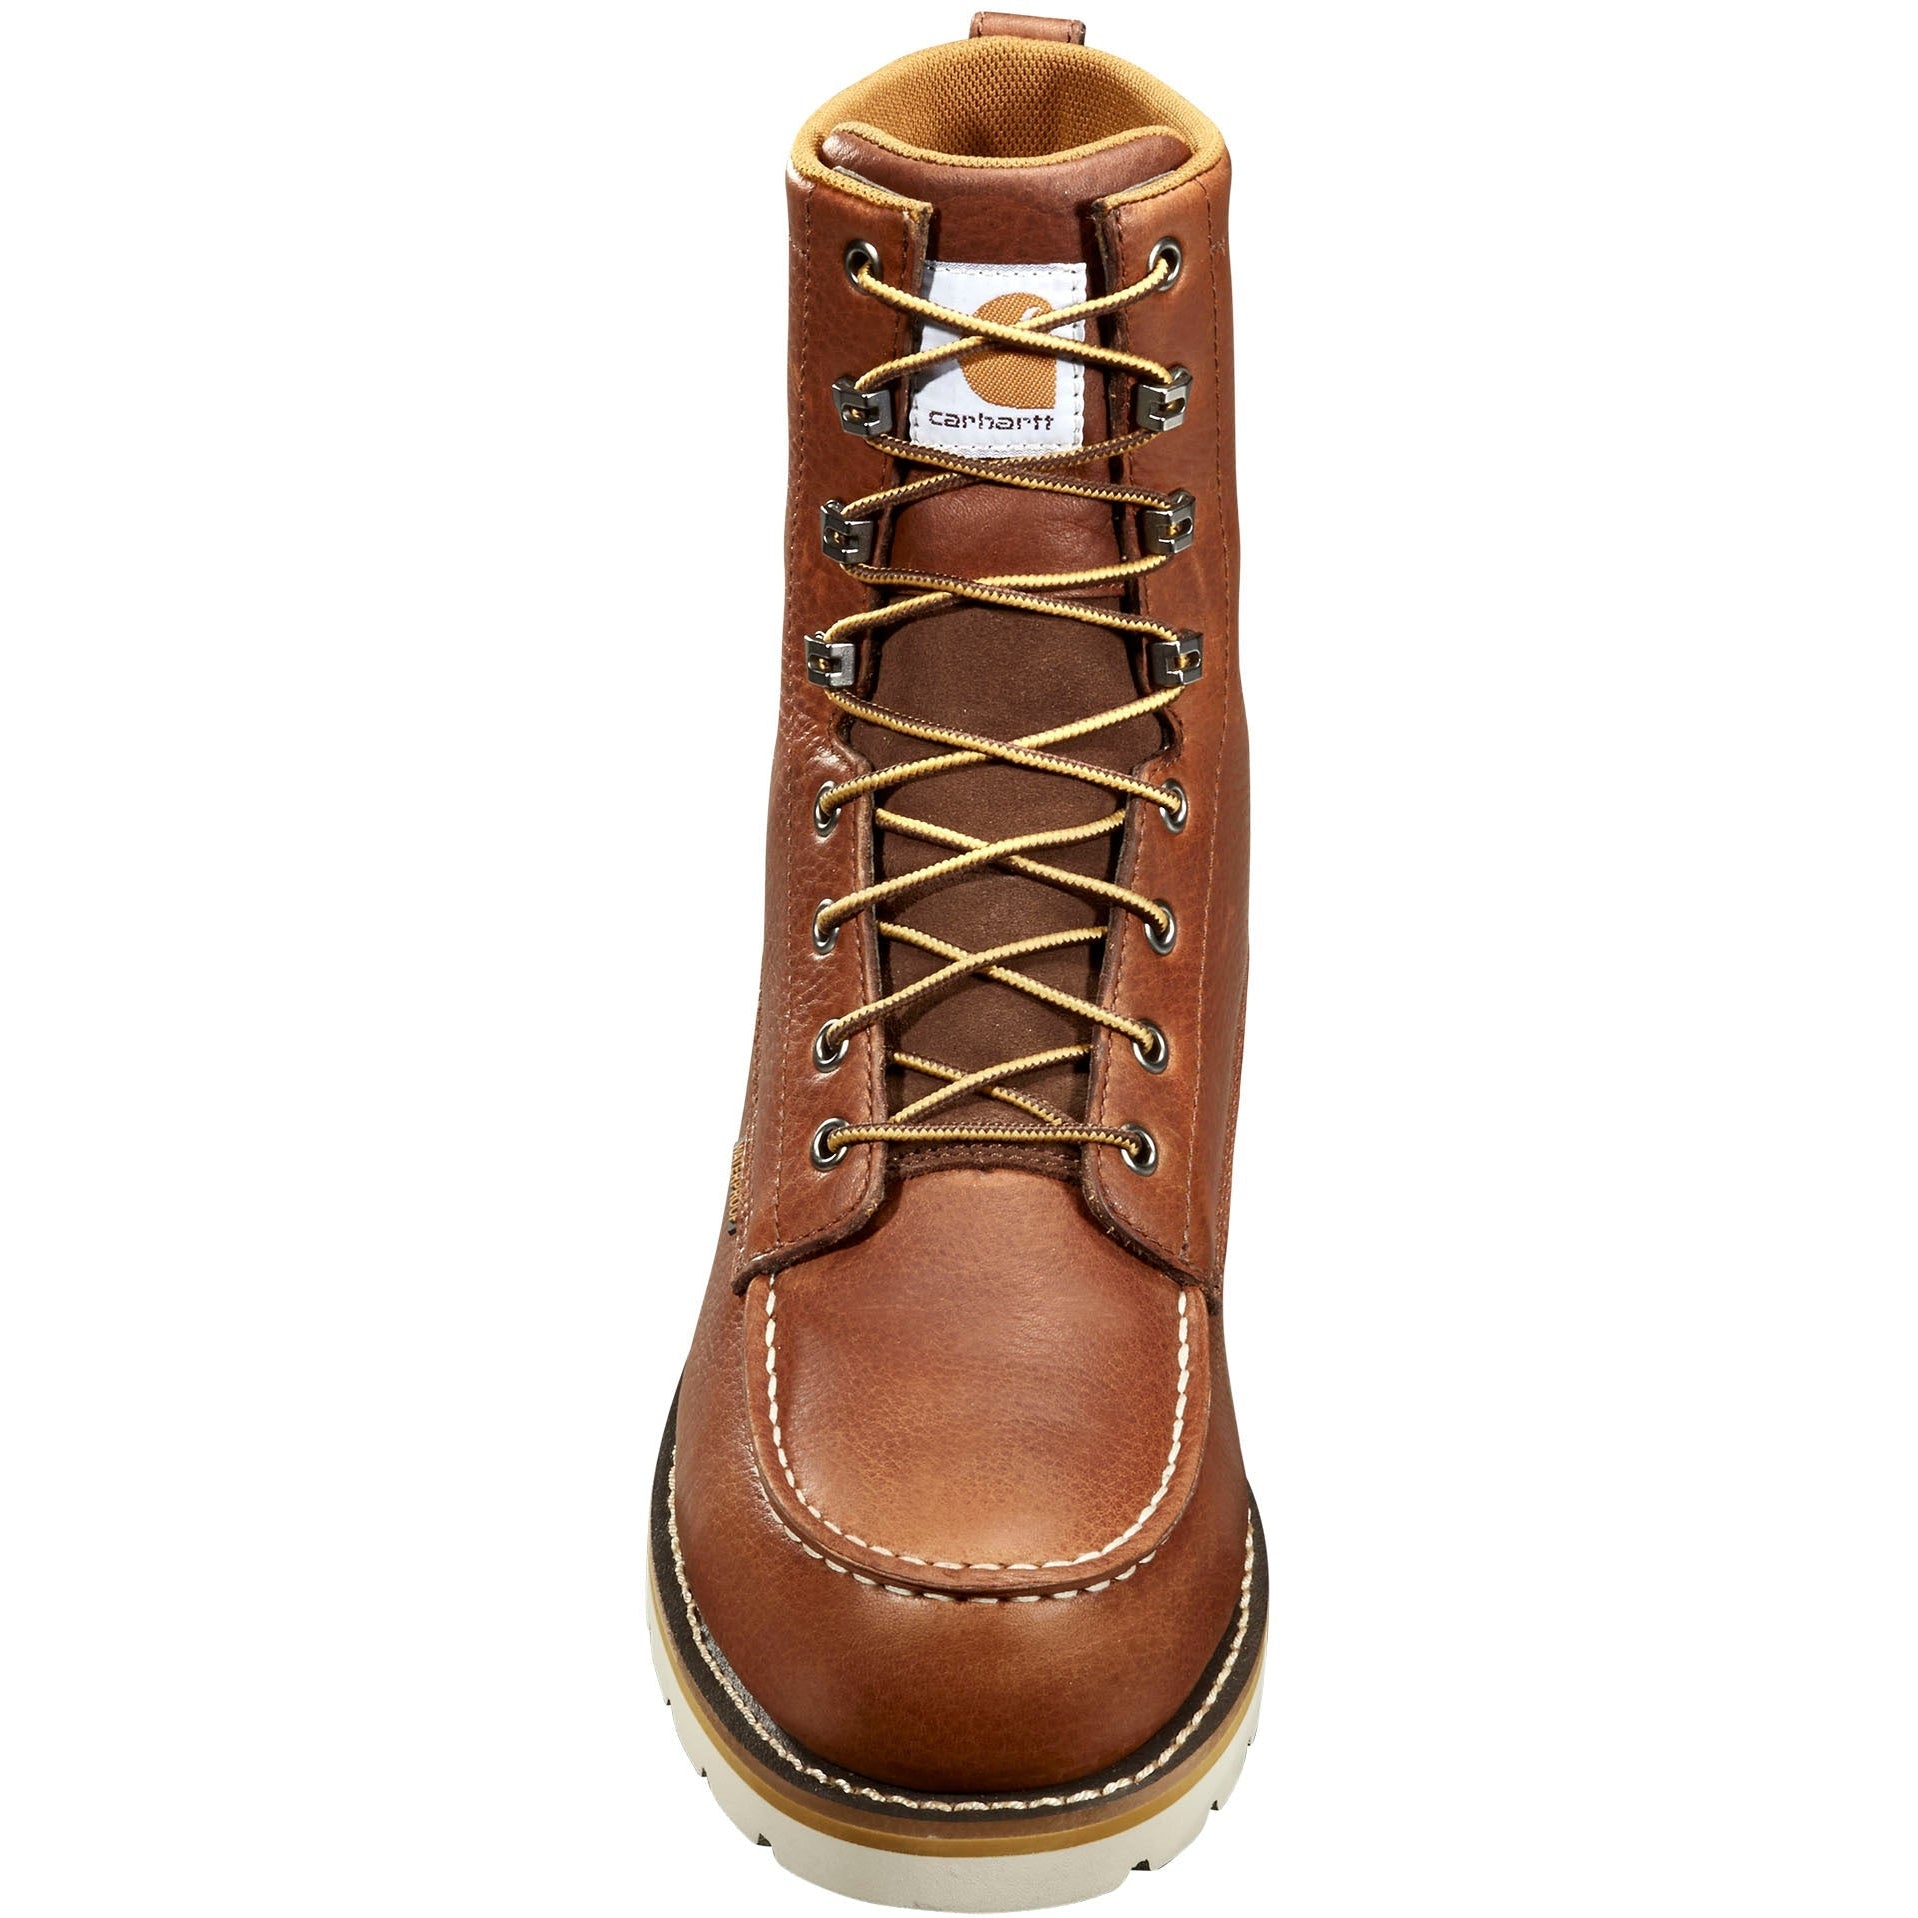 Carhartt Men's 8" Waterproof Steel Toe Wedge Work Boot - Redwood - FW8275-M  - Overlook Boots